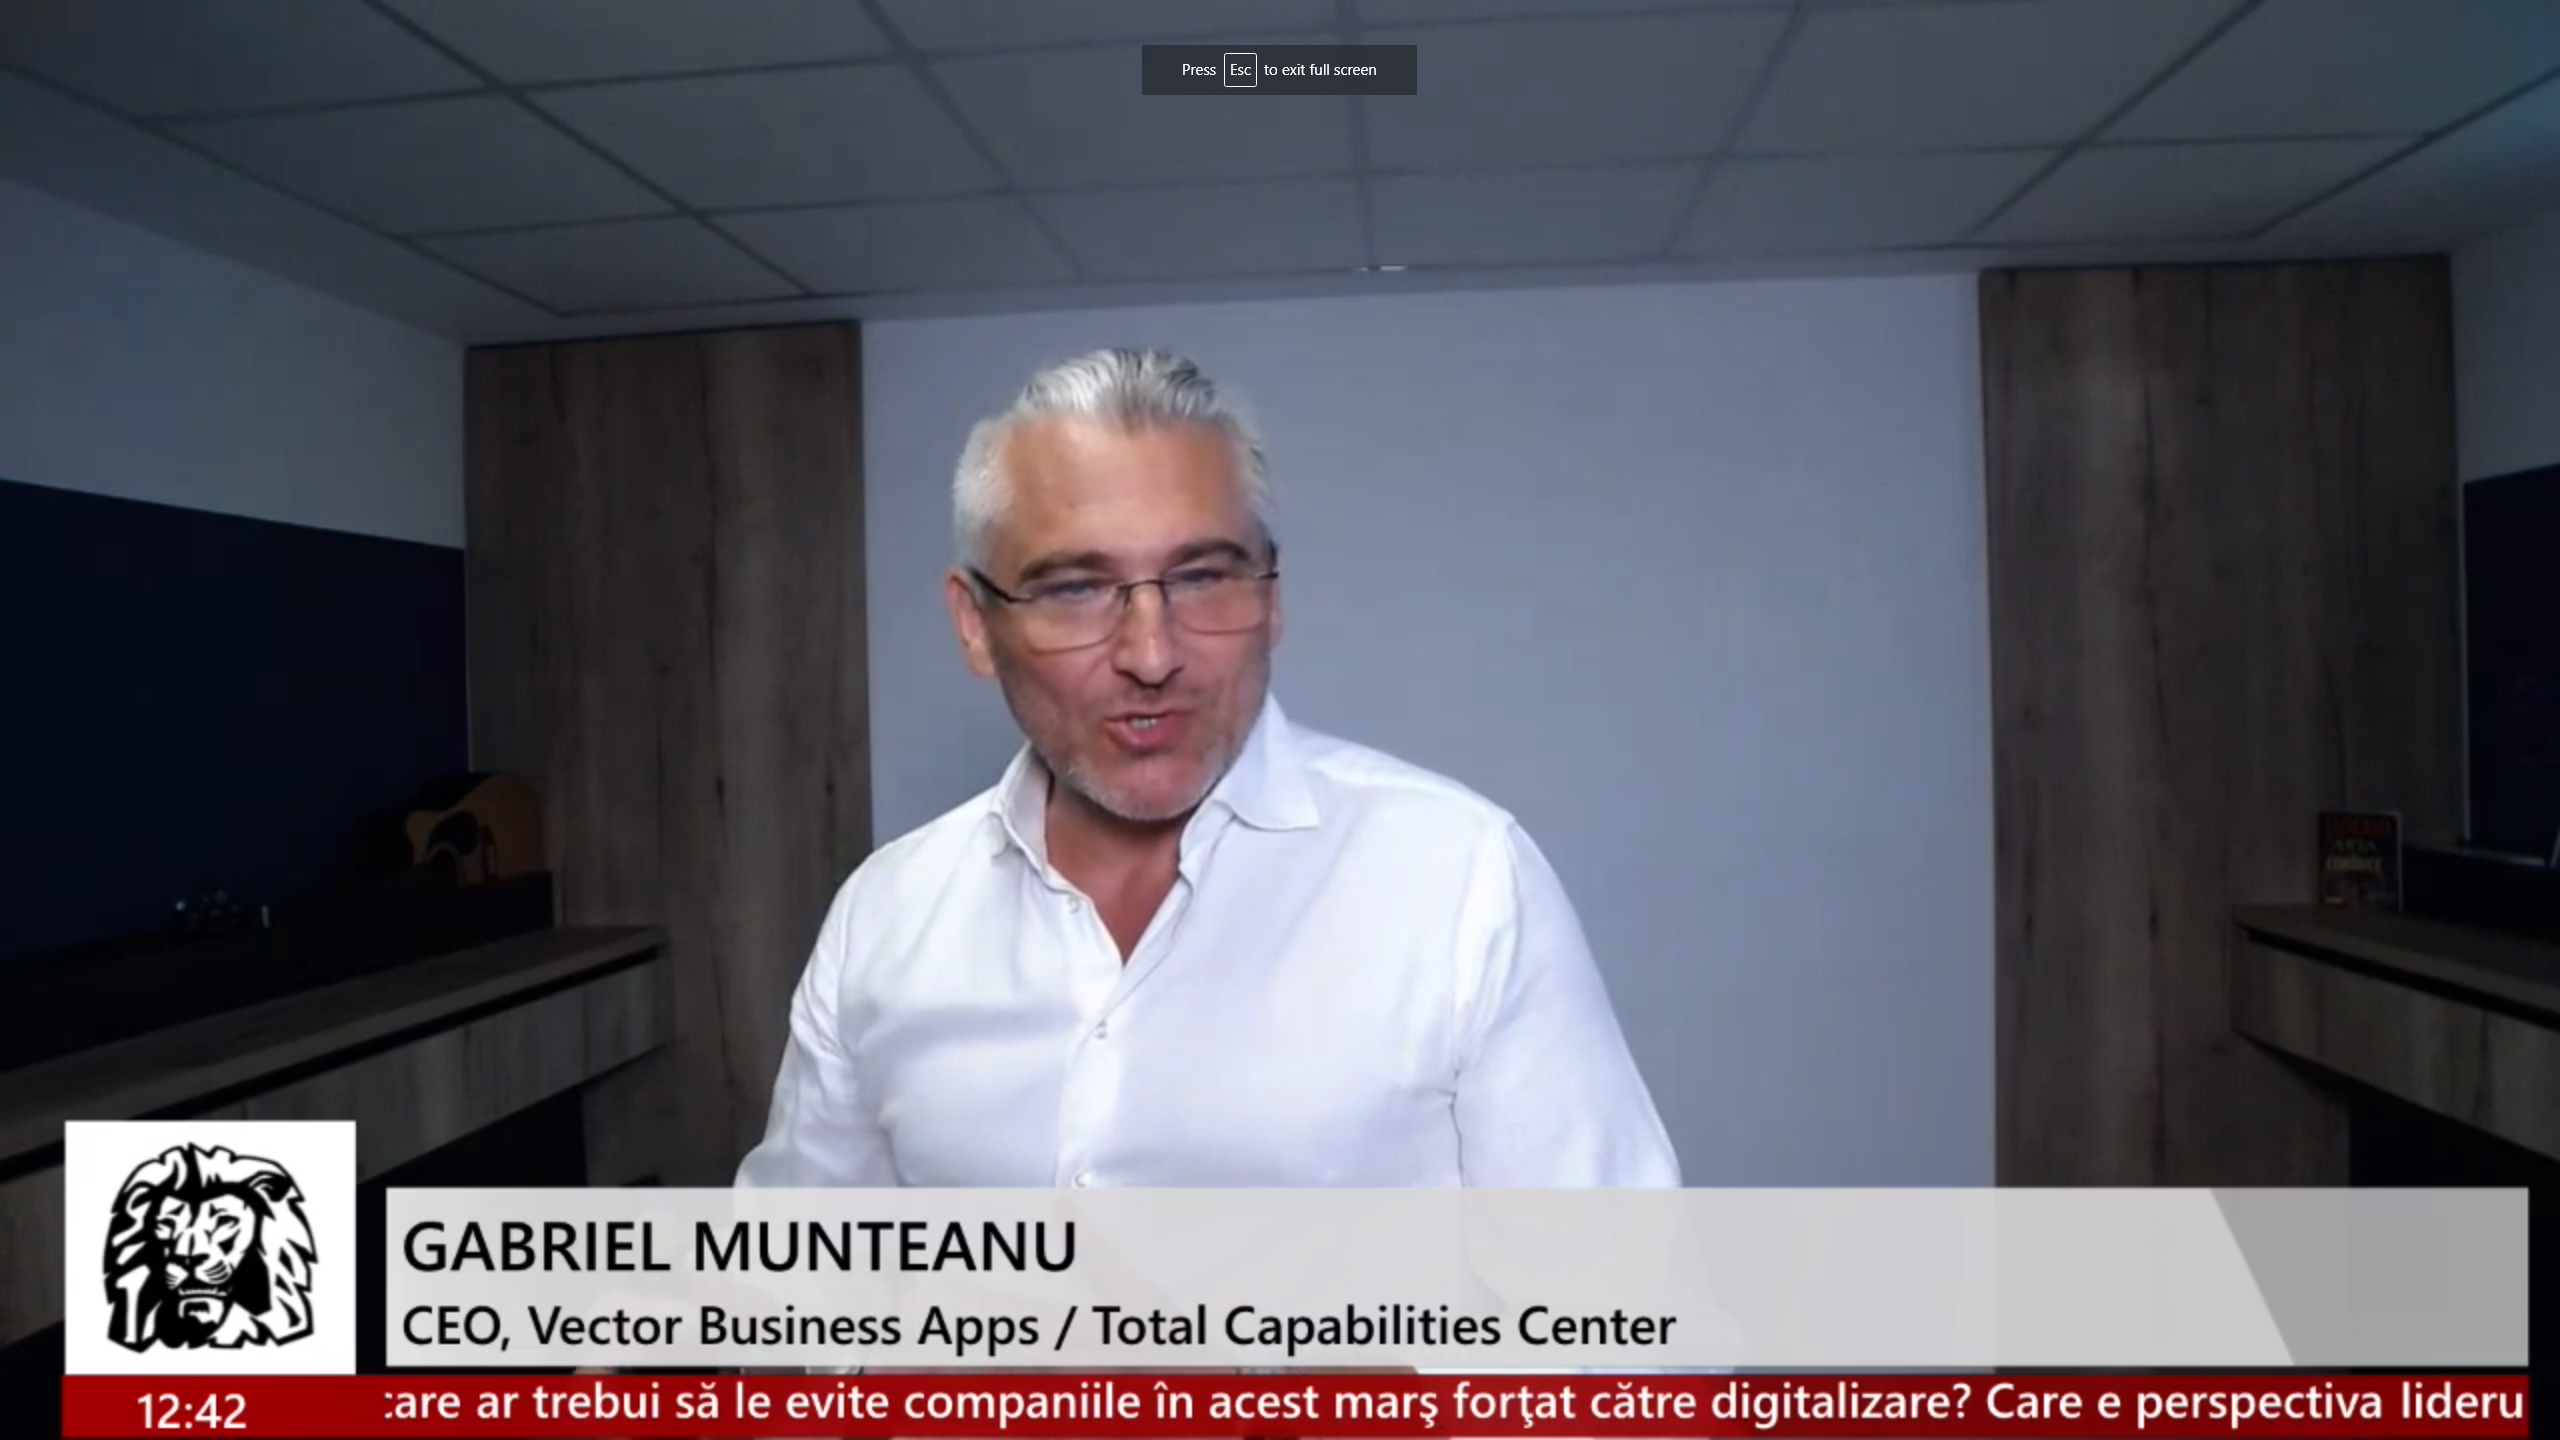 Gabriel Munteanu, CEO Vector Business Apps / Total Capabilities Center: Digitalizarea poate fi un pericol la ora actuală dacă nu e gândită bine, dacă nu dezvoltăm abilităţile digitale a celor cu care lucrăm